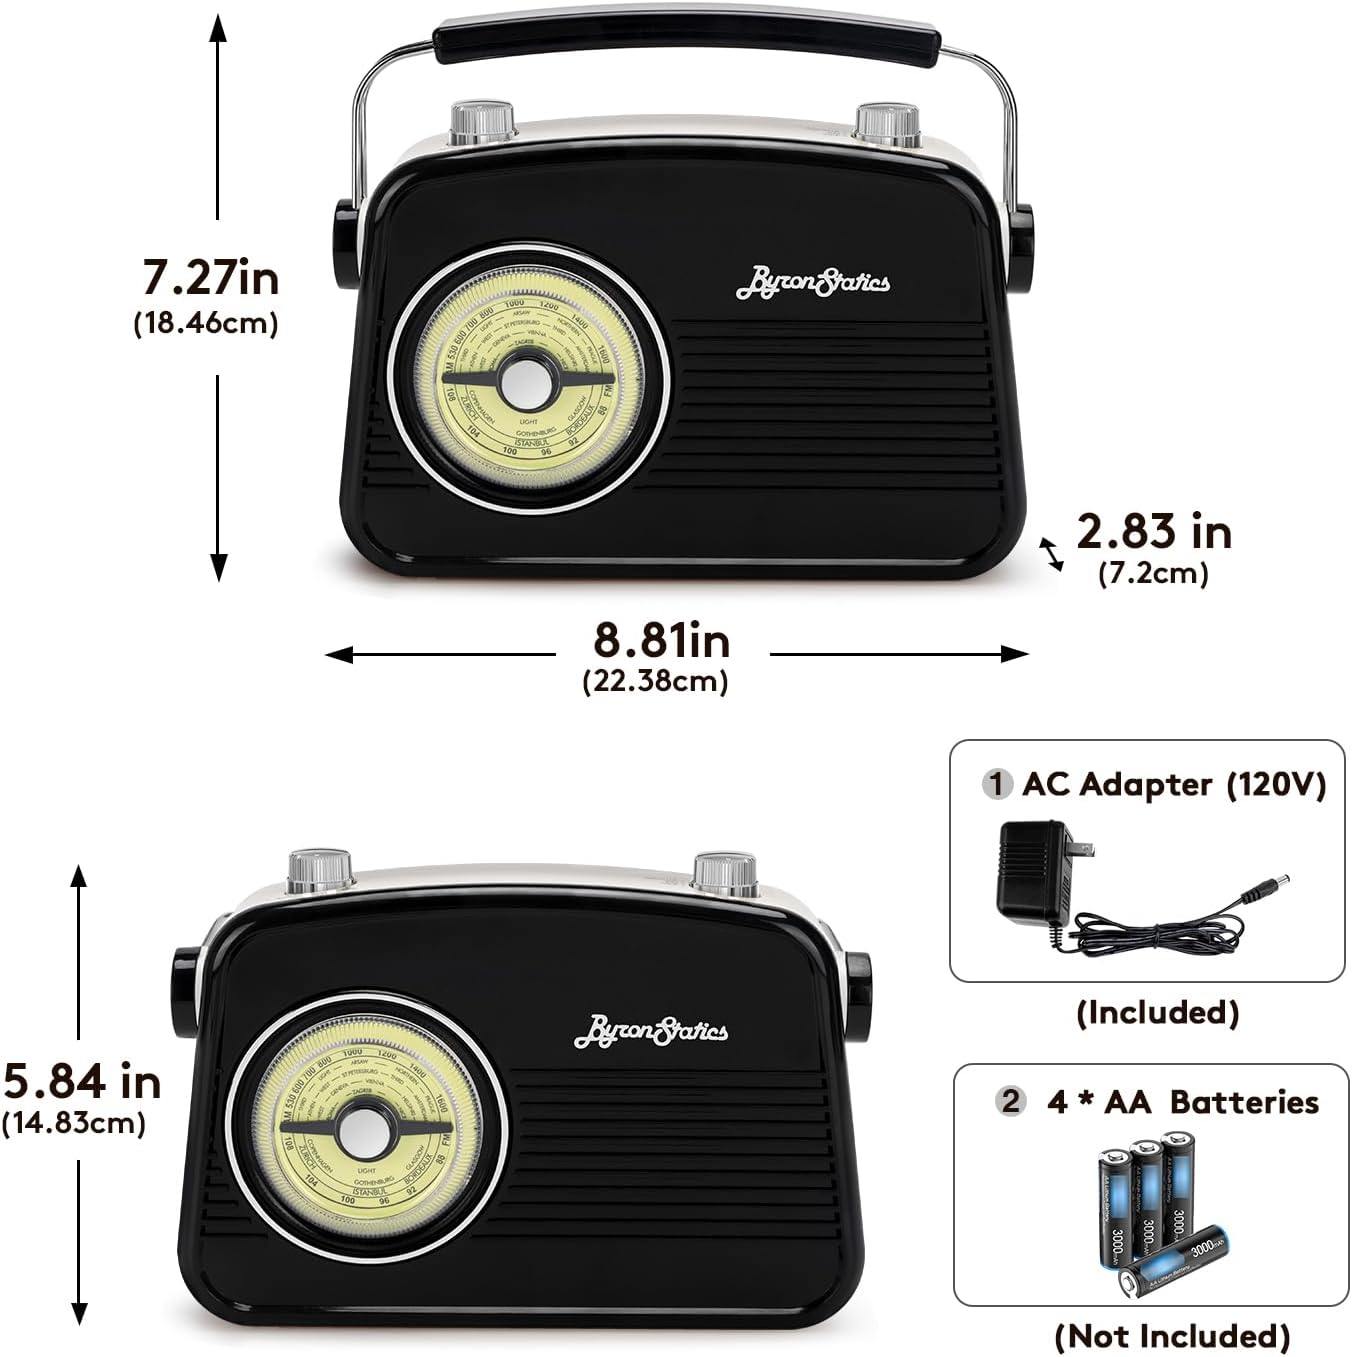 Radios Pequeñas: Compra Tu Radio De Pequeñas Dimensiones